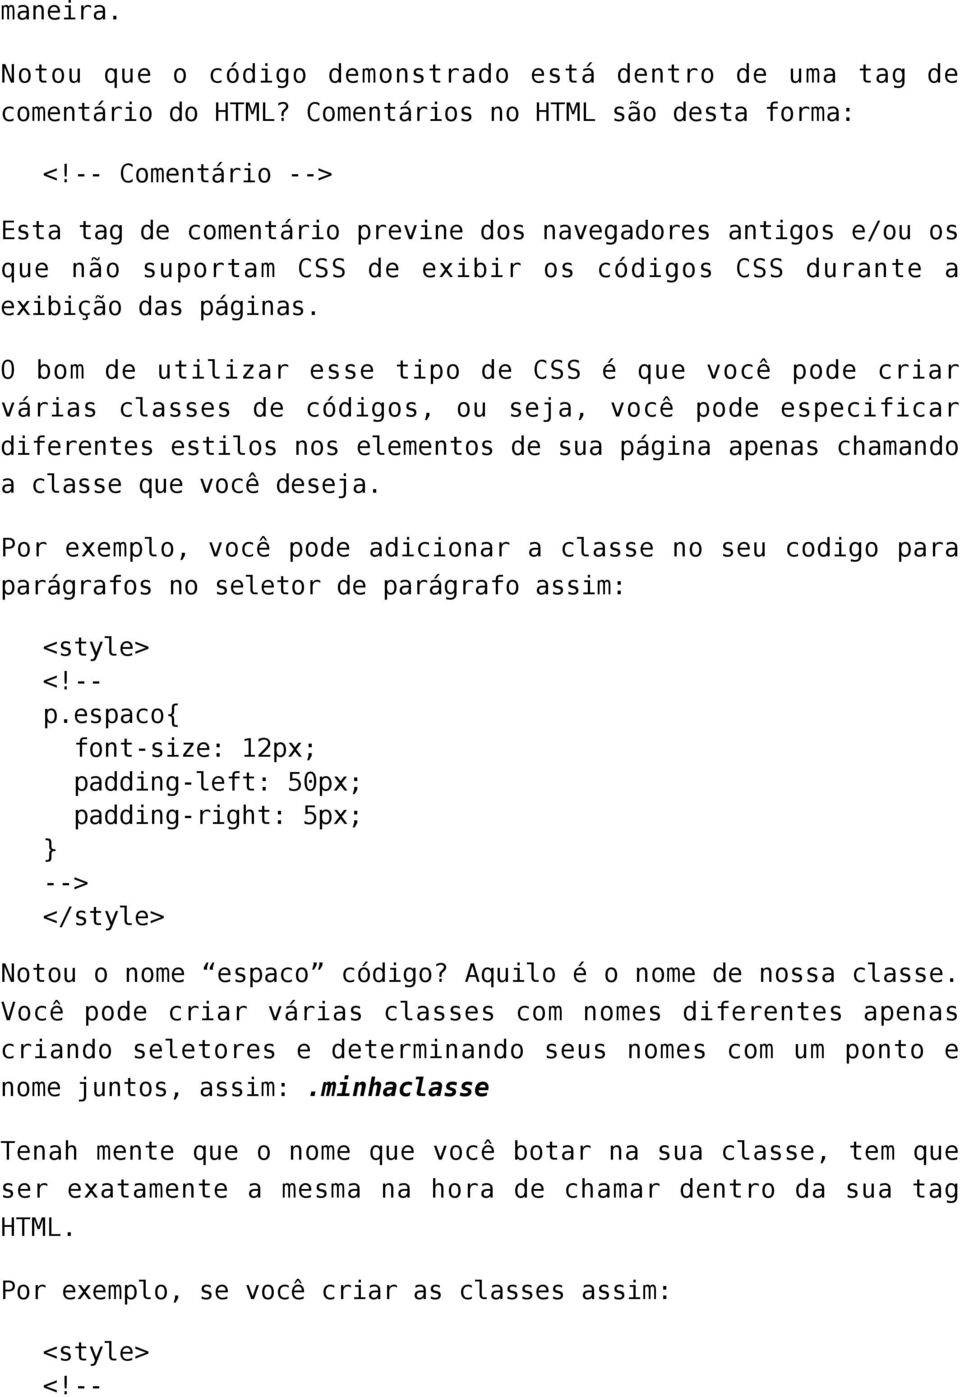 O bom de utilizar esse tipo de CSS é que você pode criar várias classes de códigos, ou seja, você pode especificar diferentes estilos nos elementos de sua página apenas chamando a classe que você